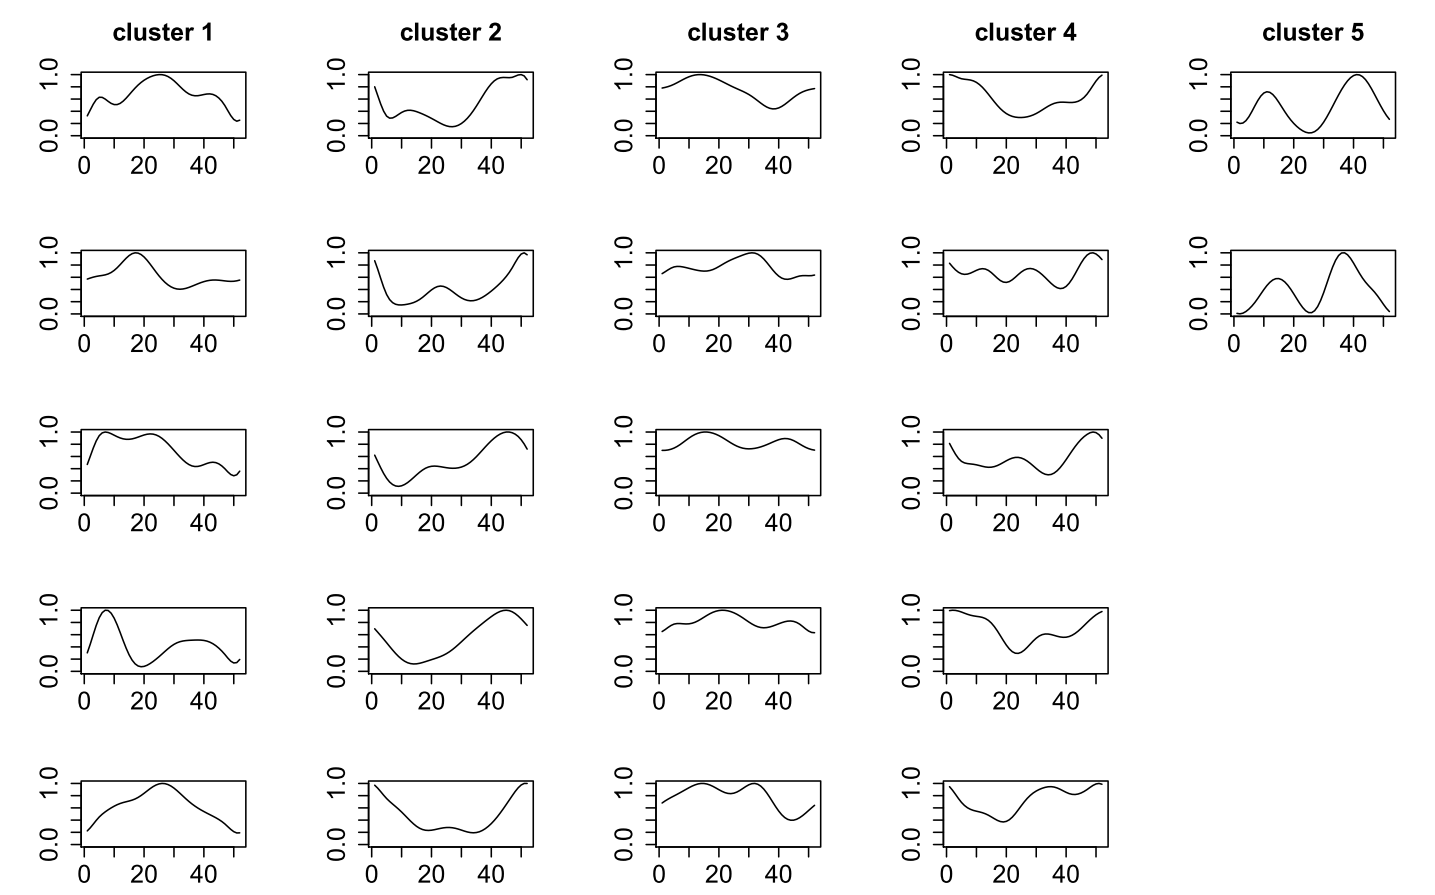 Jeweils 5 Beispiel-Zeitreihen pro Cluster